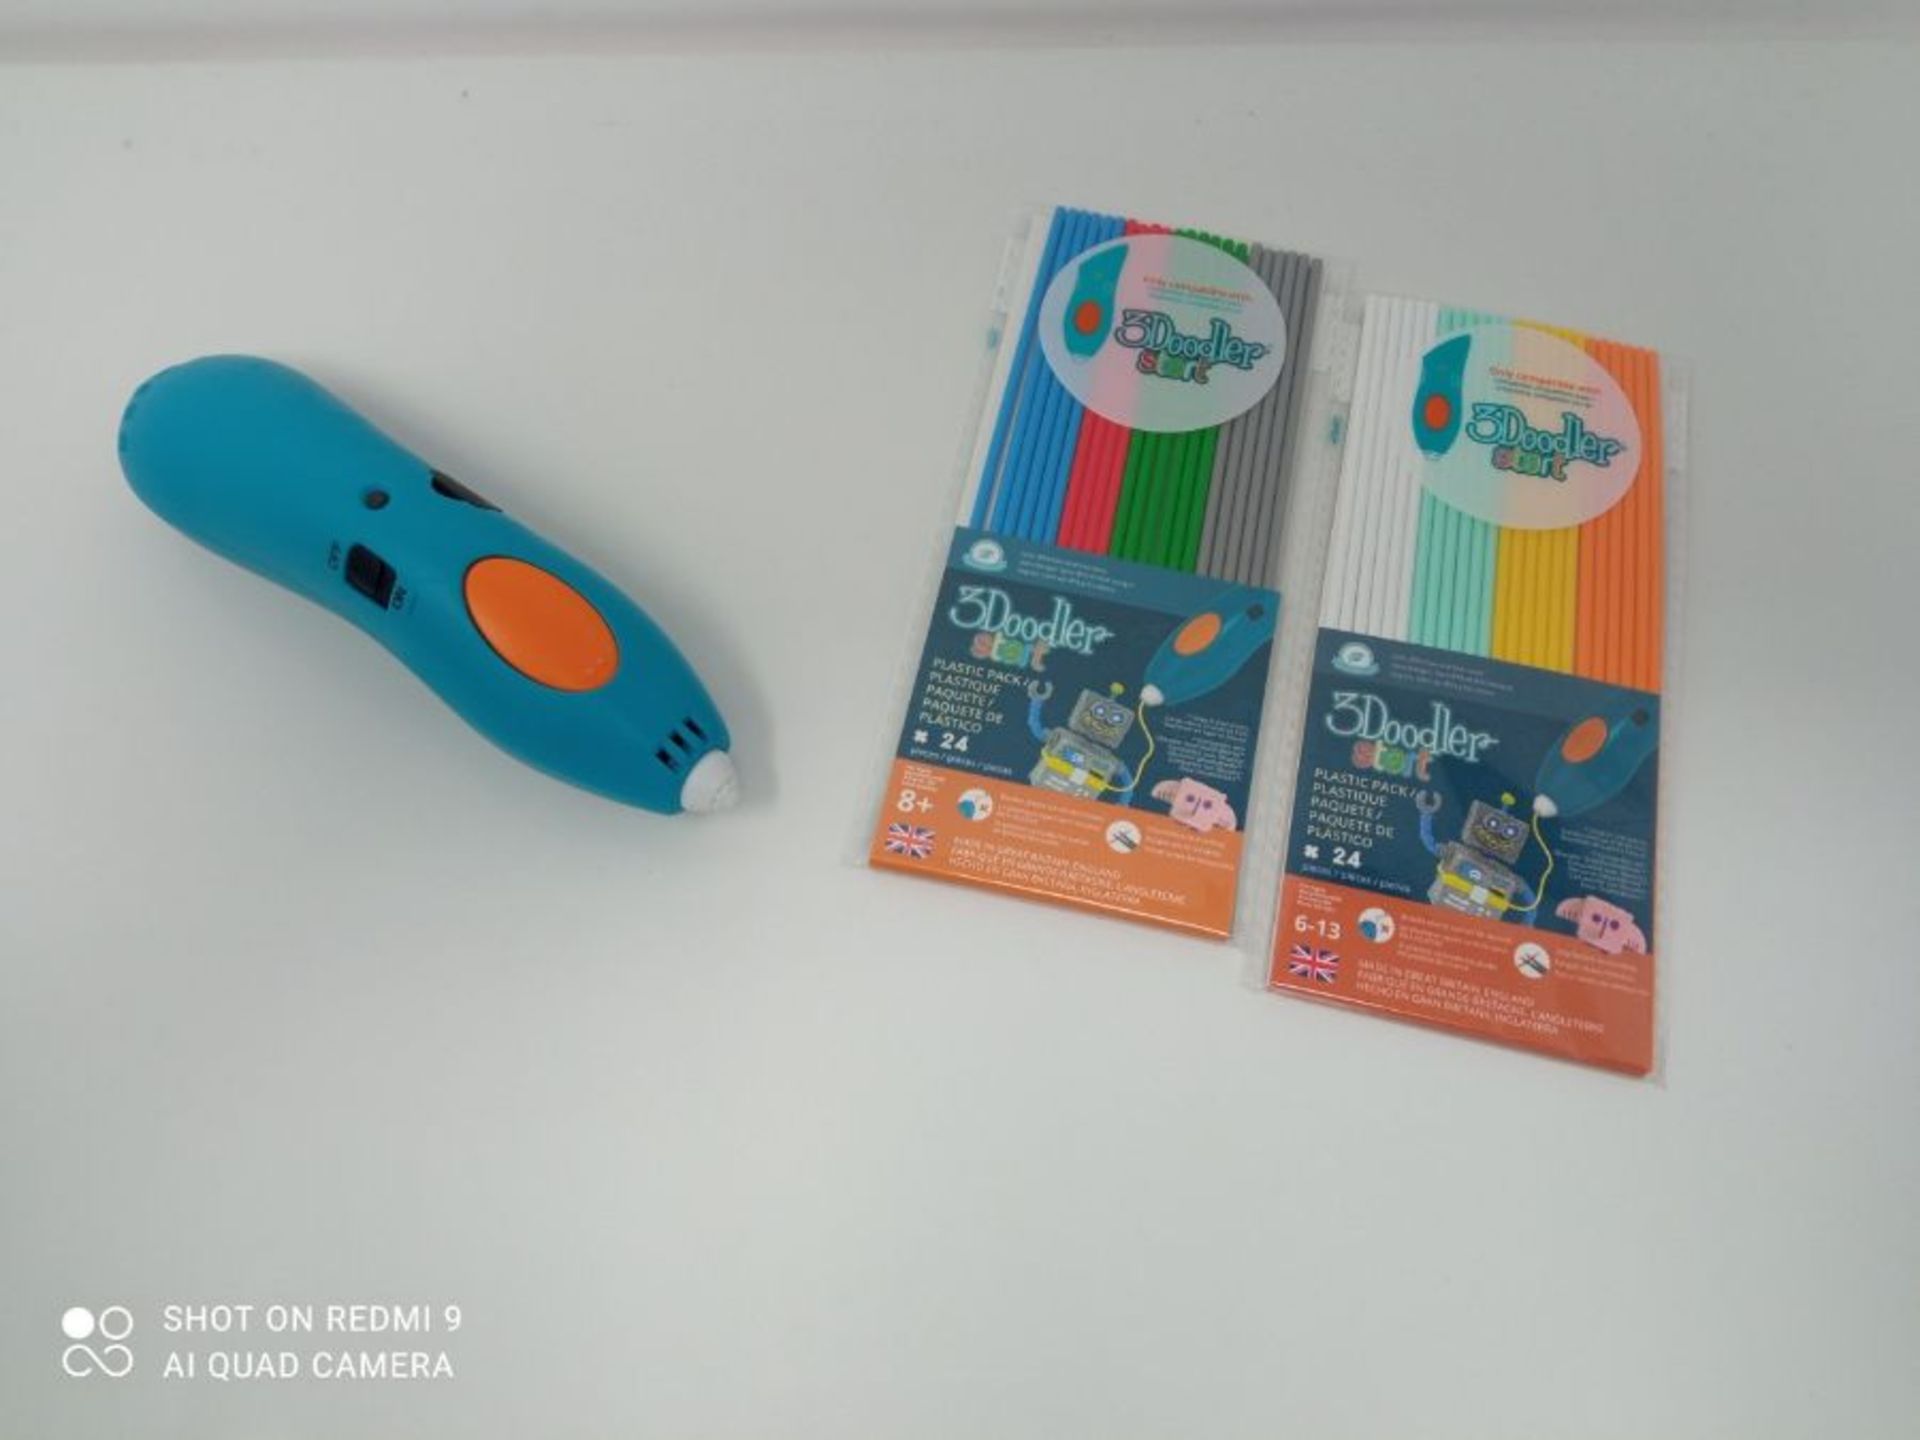 3Doodler Start 3D Printing Pen for Kids, Age 6 & Up-STEM Toy for Boys & Girls-Essentia - Image 3 of 3